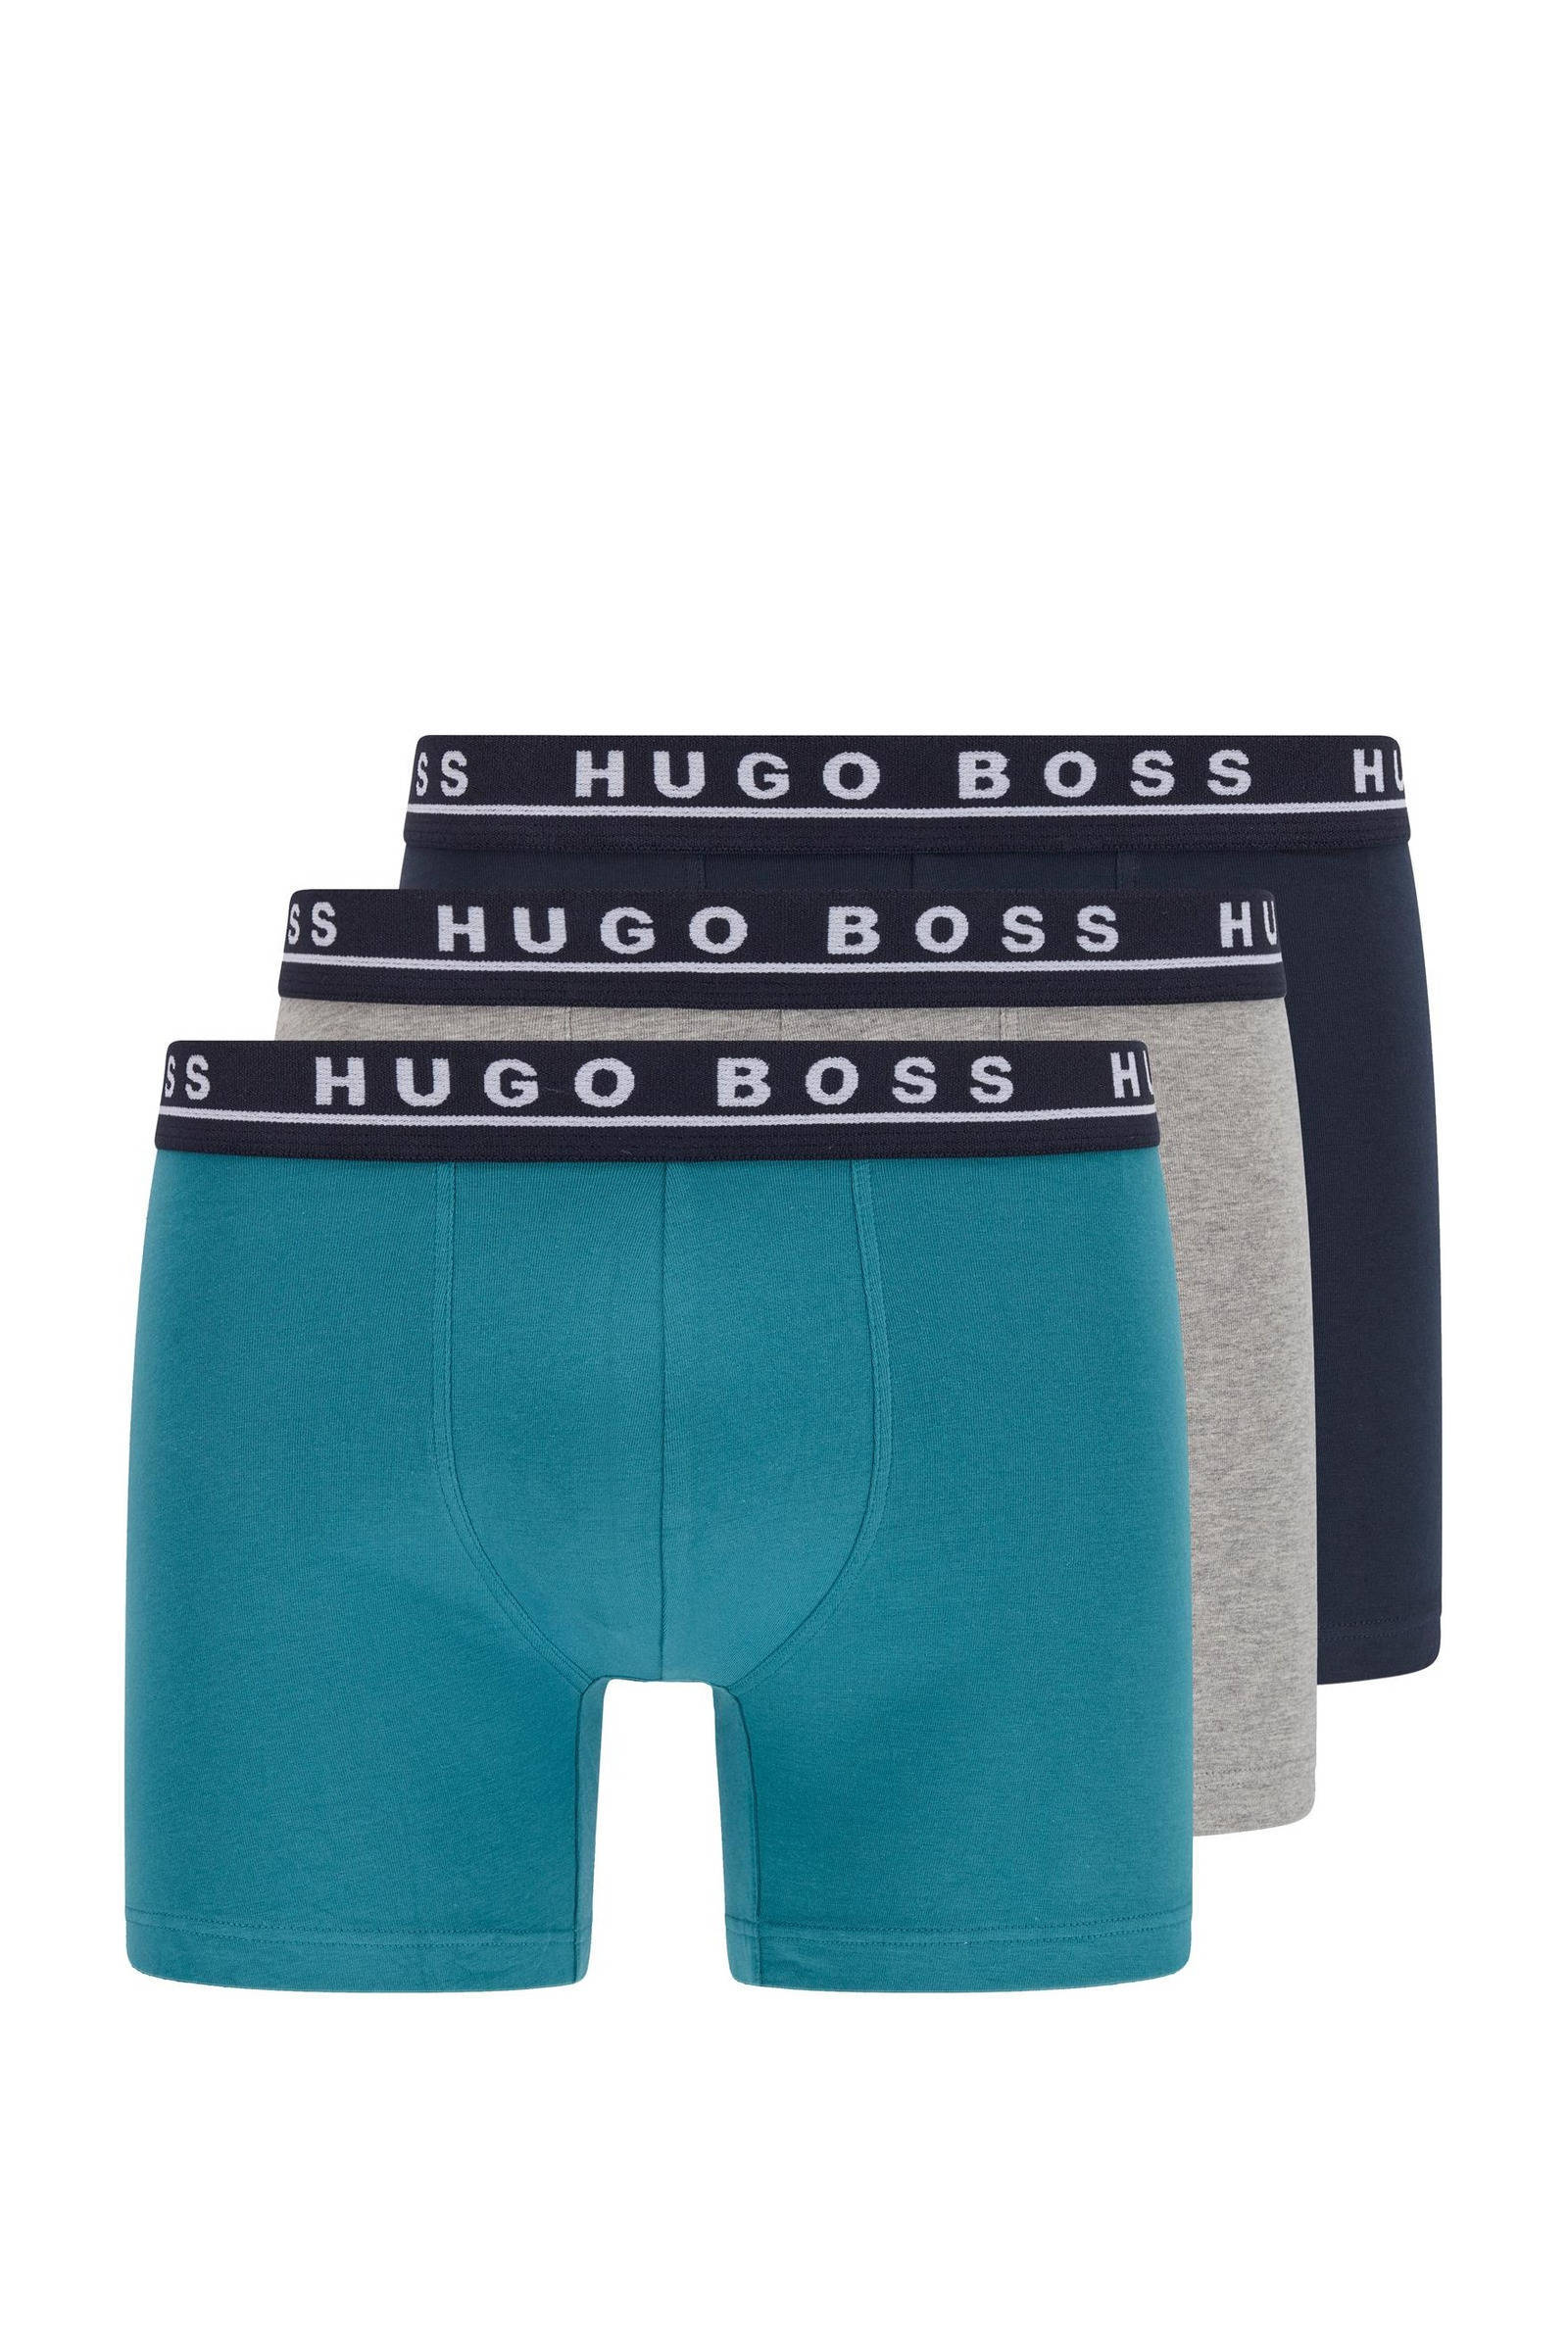 Boss Hugo Brief Boxershorts Heren(3 pack ) online kopen